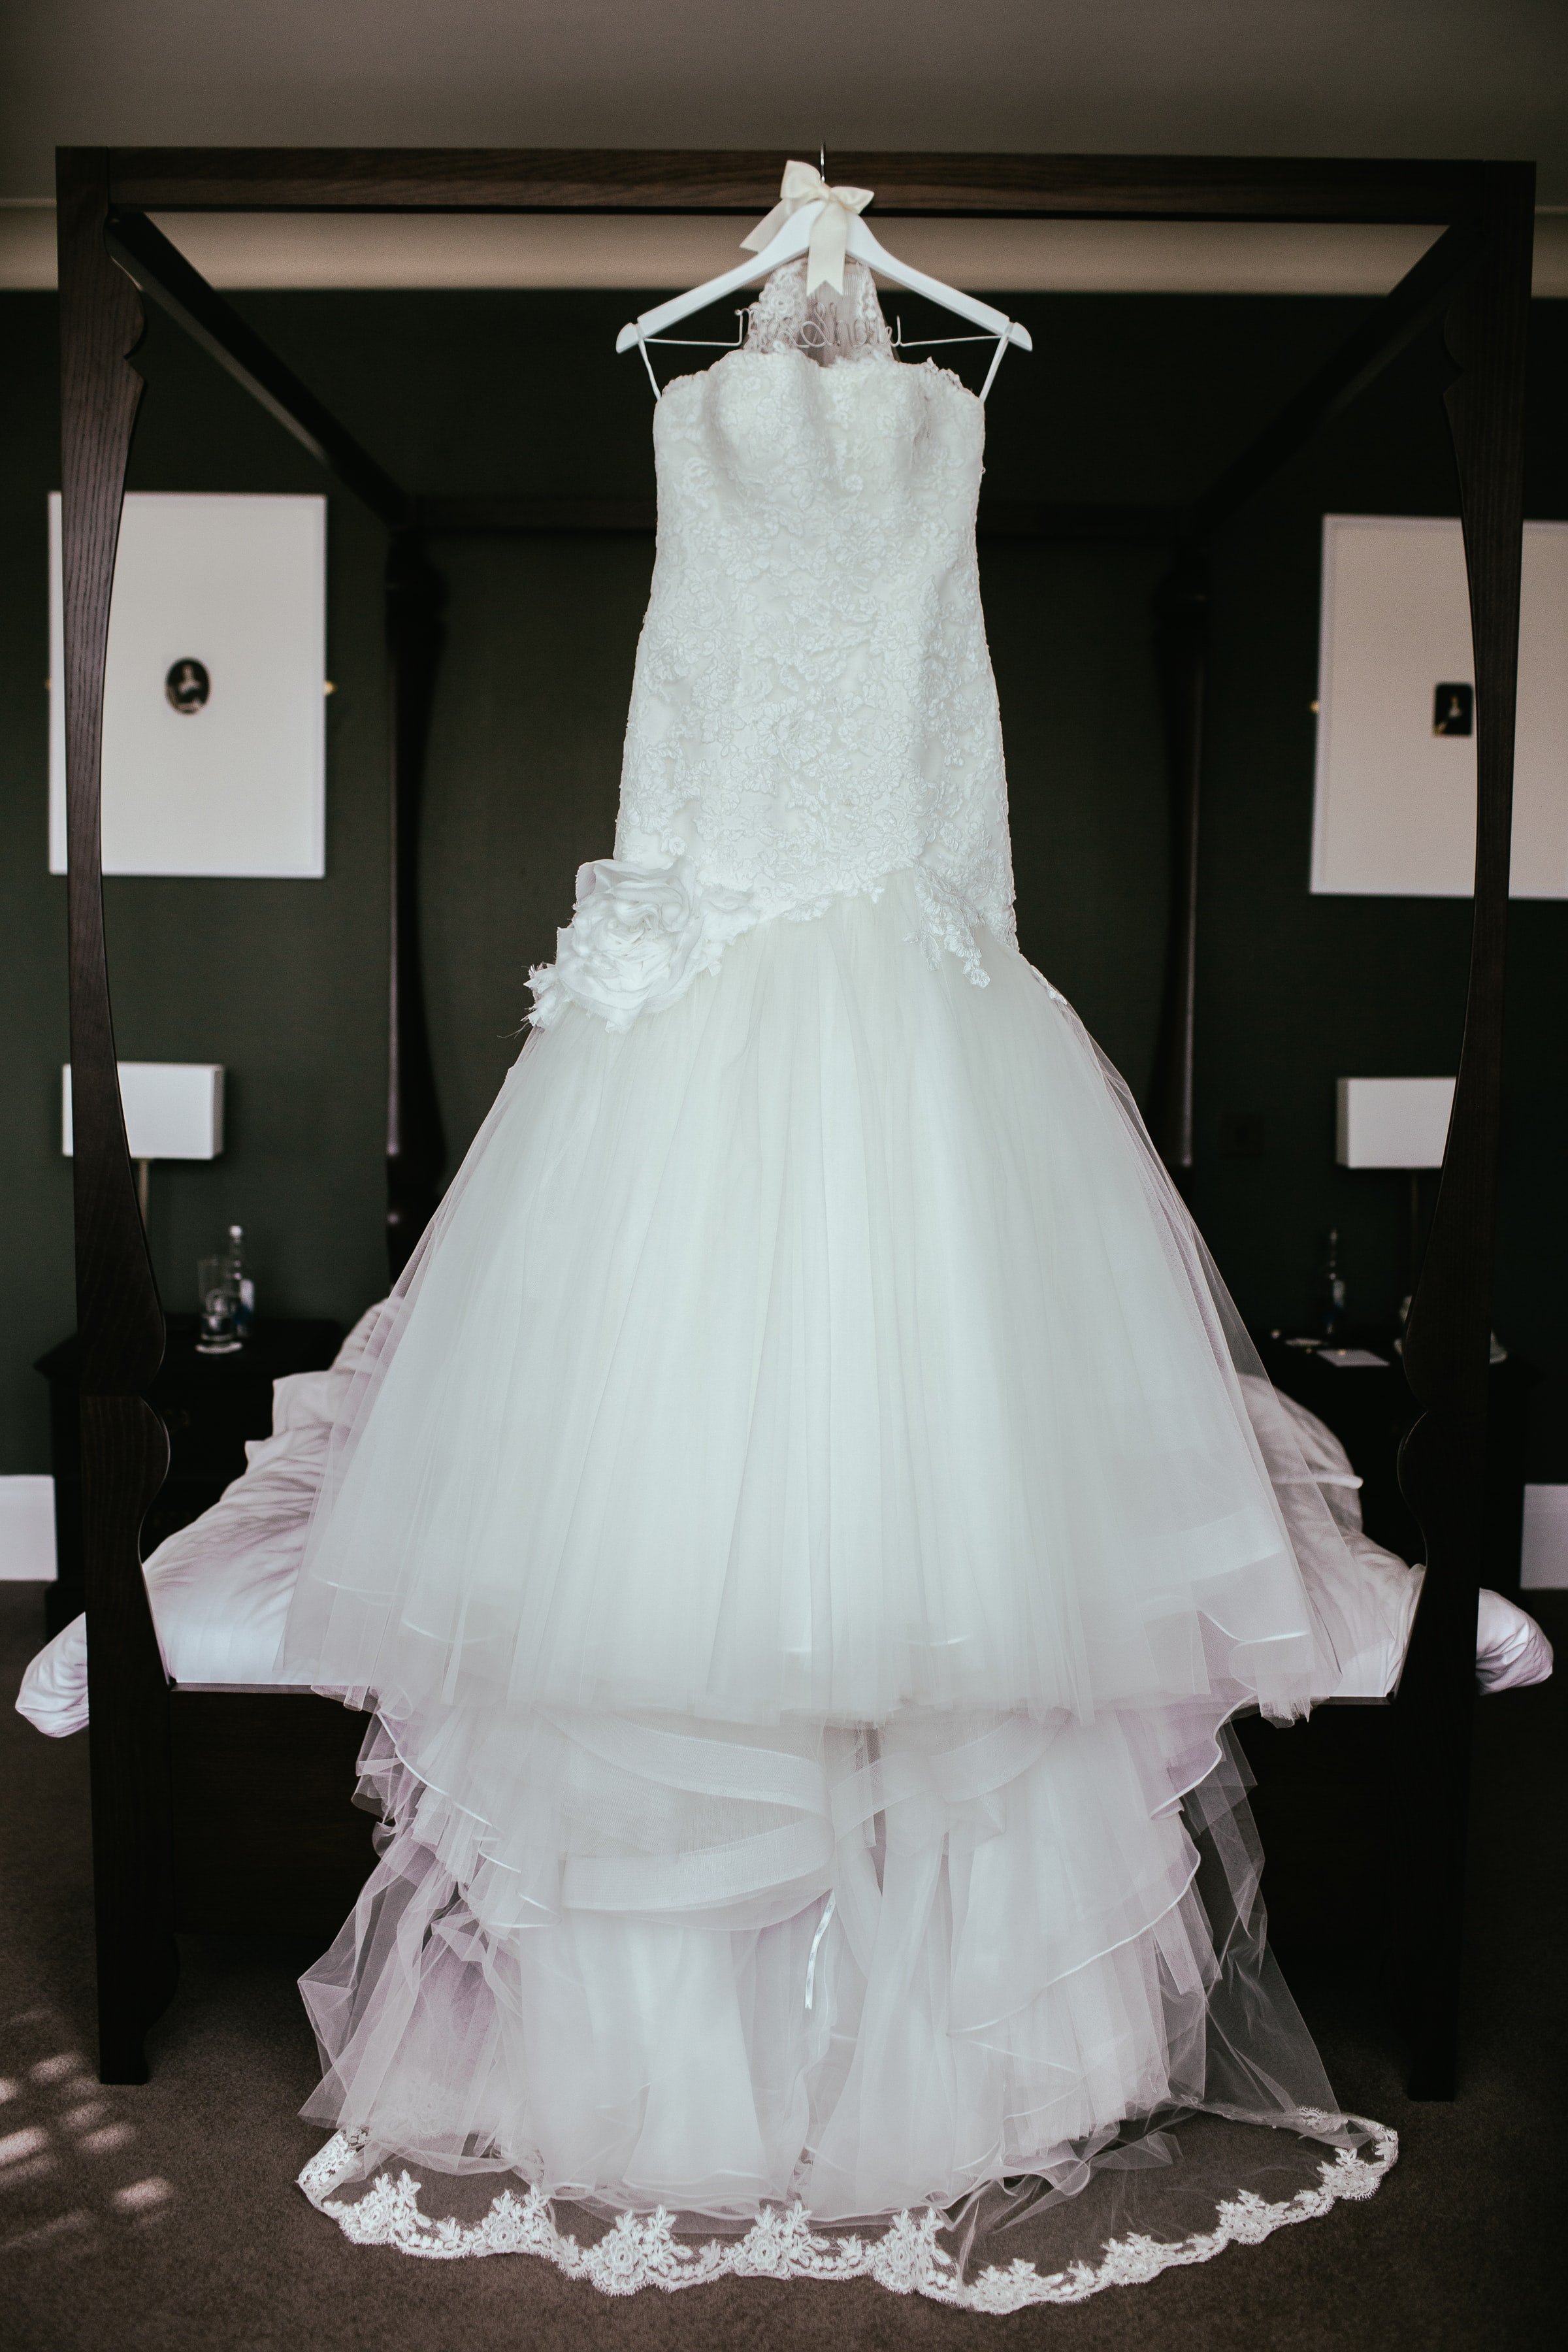 Une robe de mariée blanche | Source : Unsplash